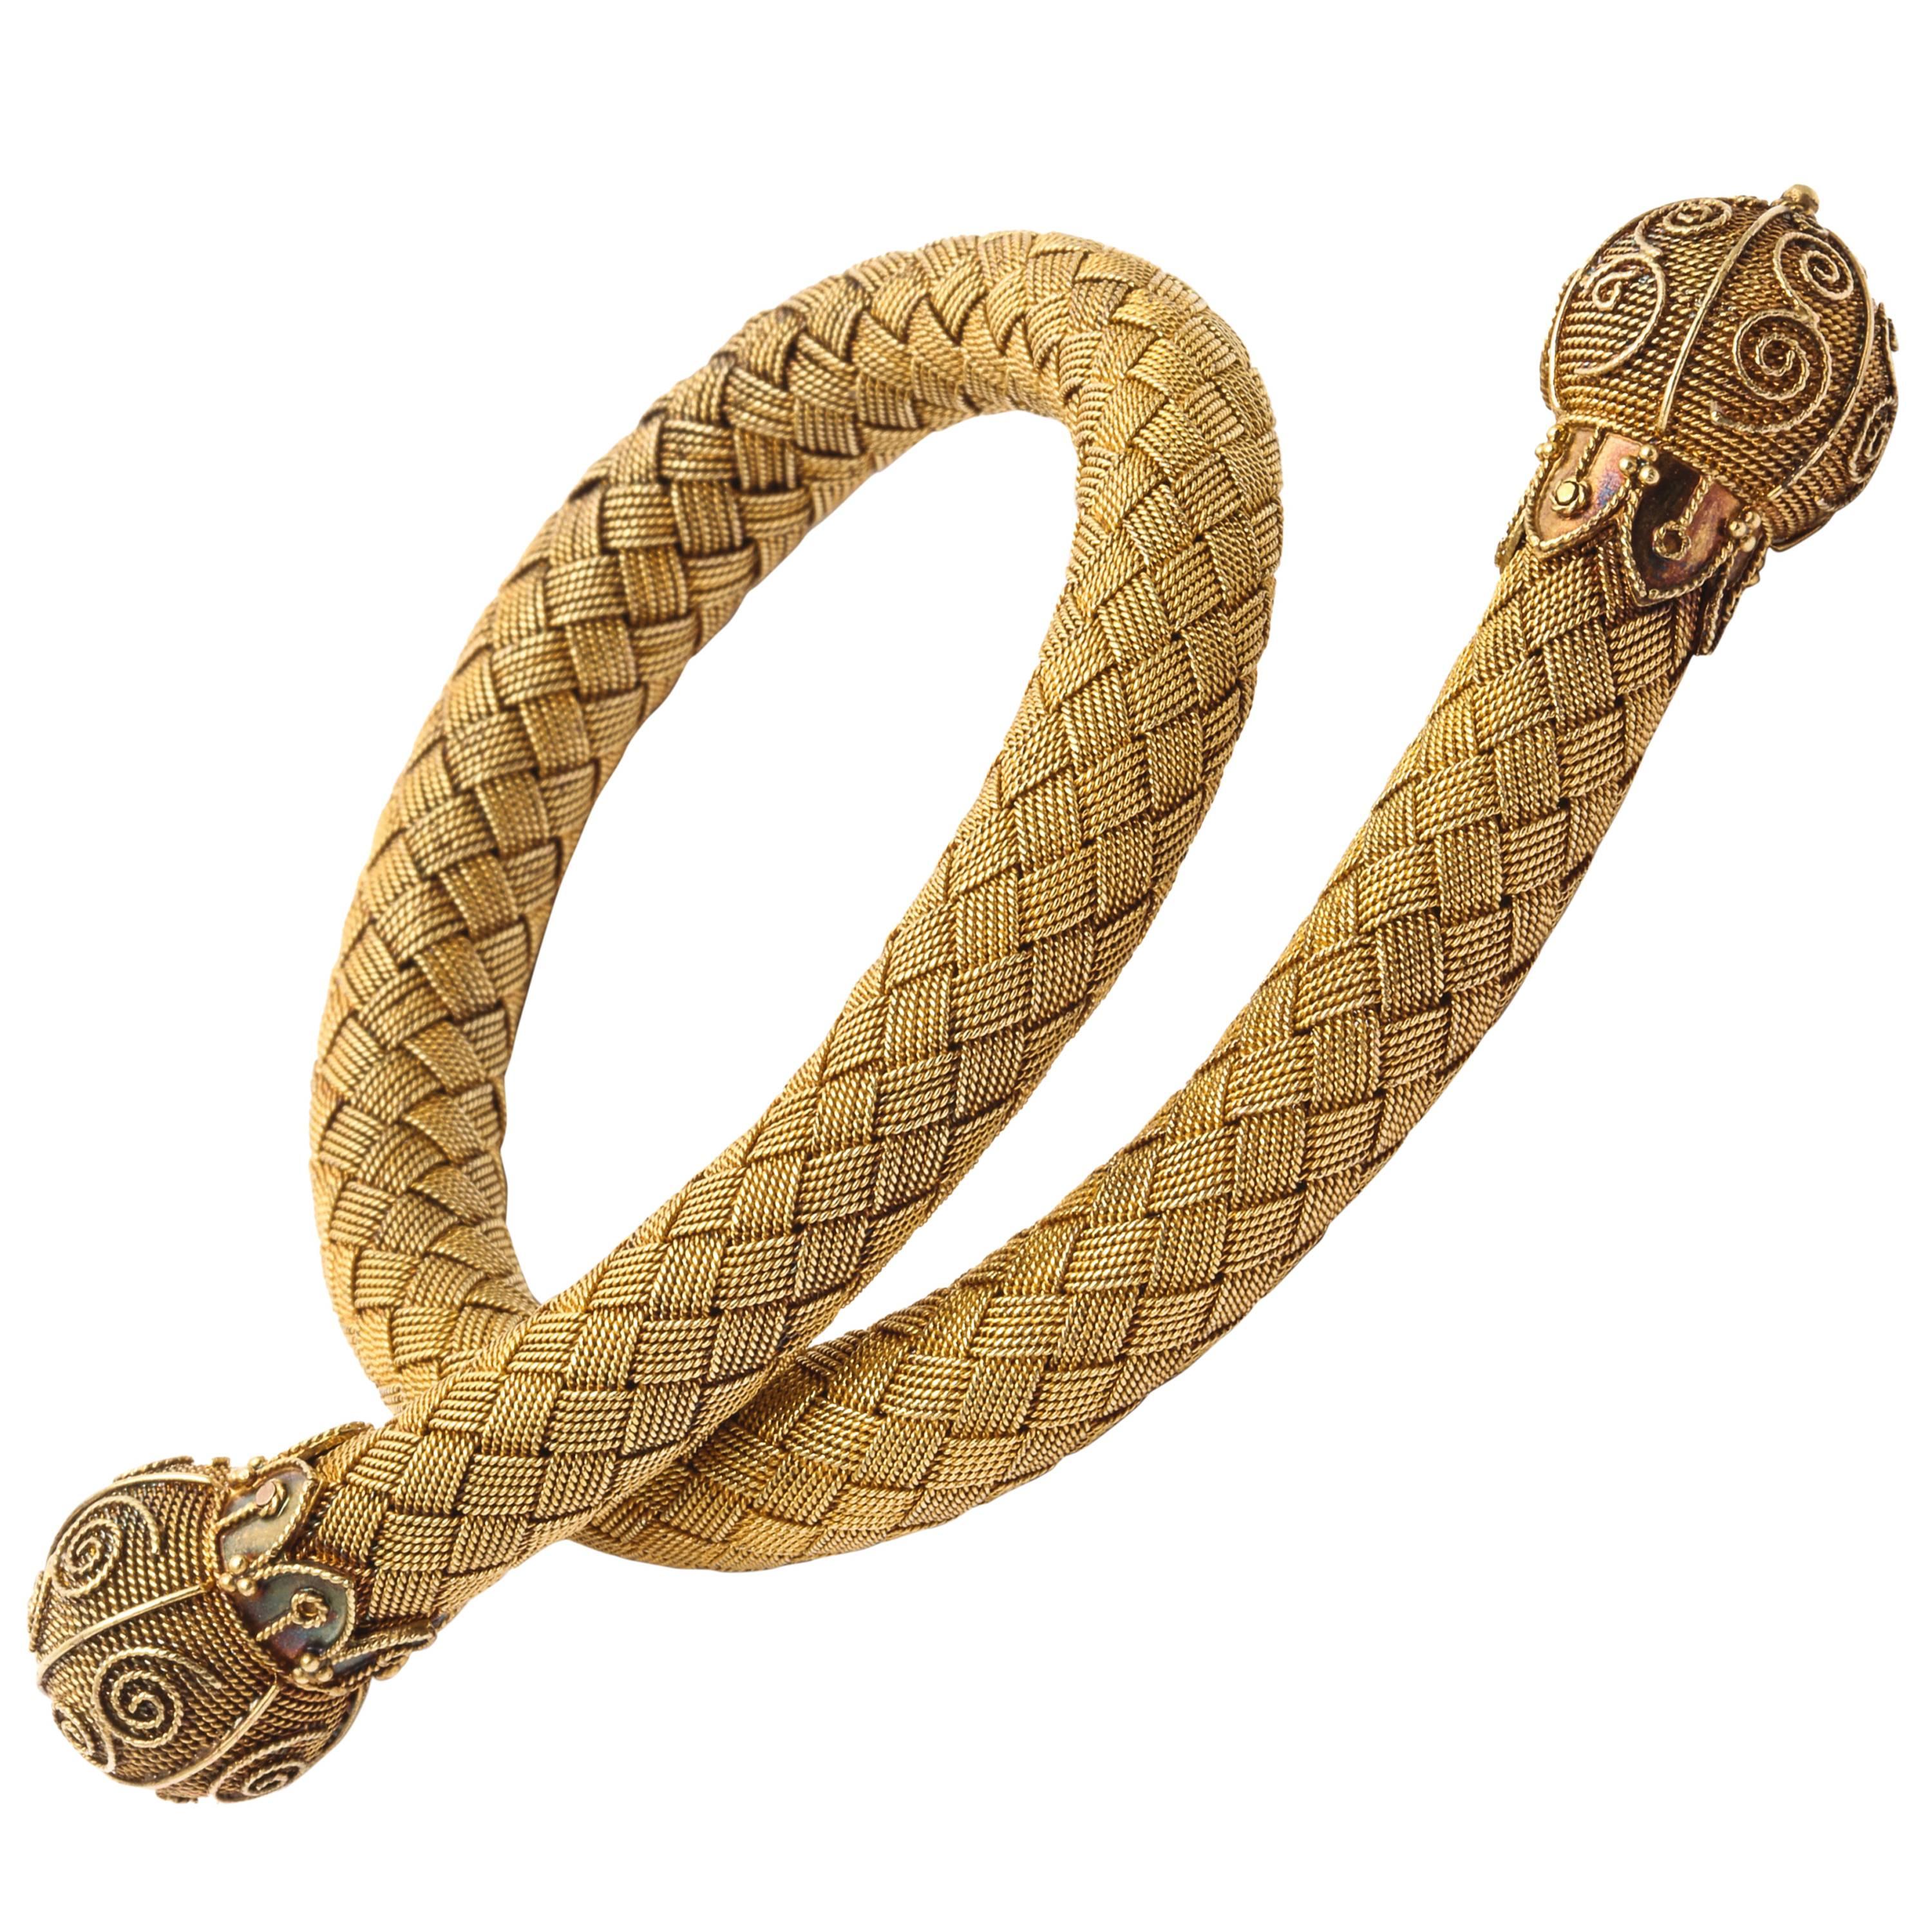 Antique 18kt Gold Mesh Woven Snake Bracelet